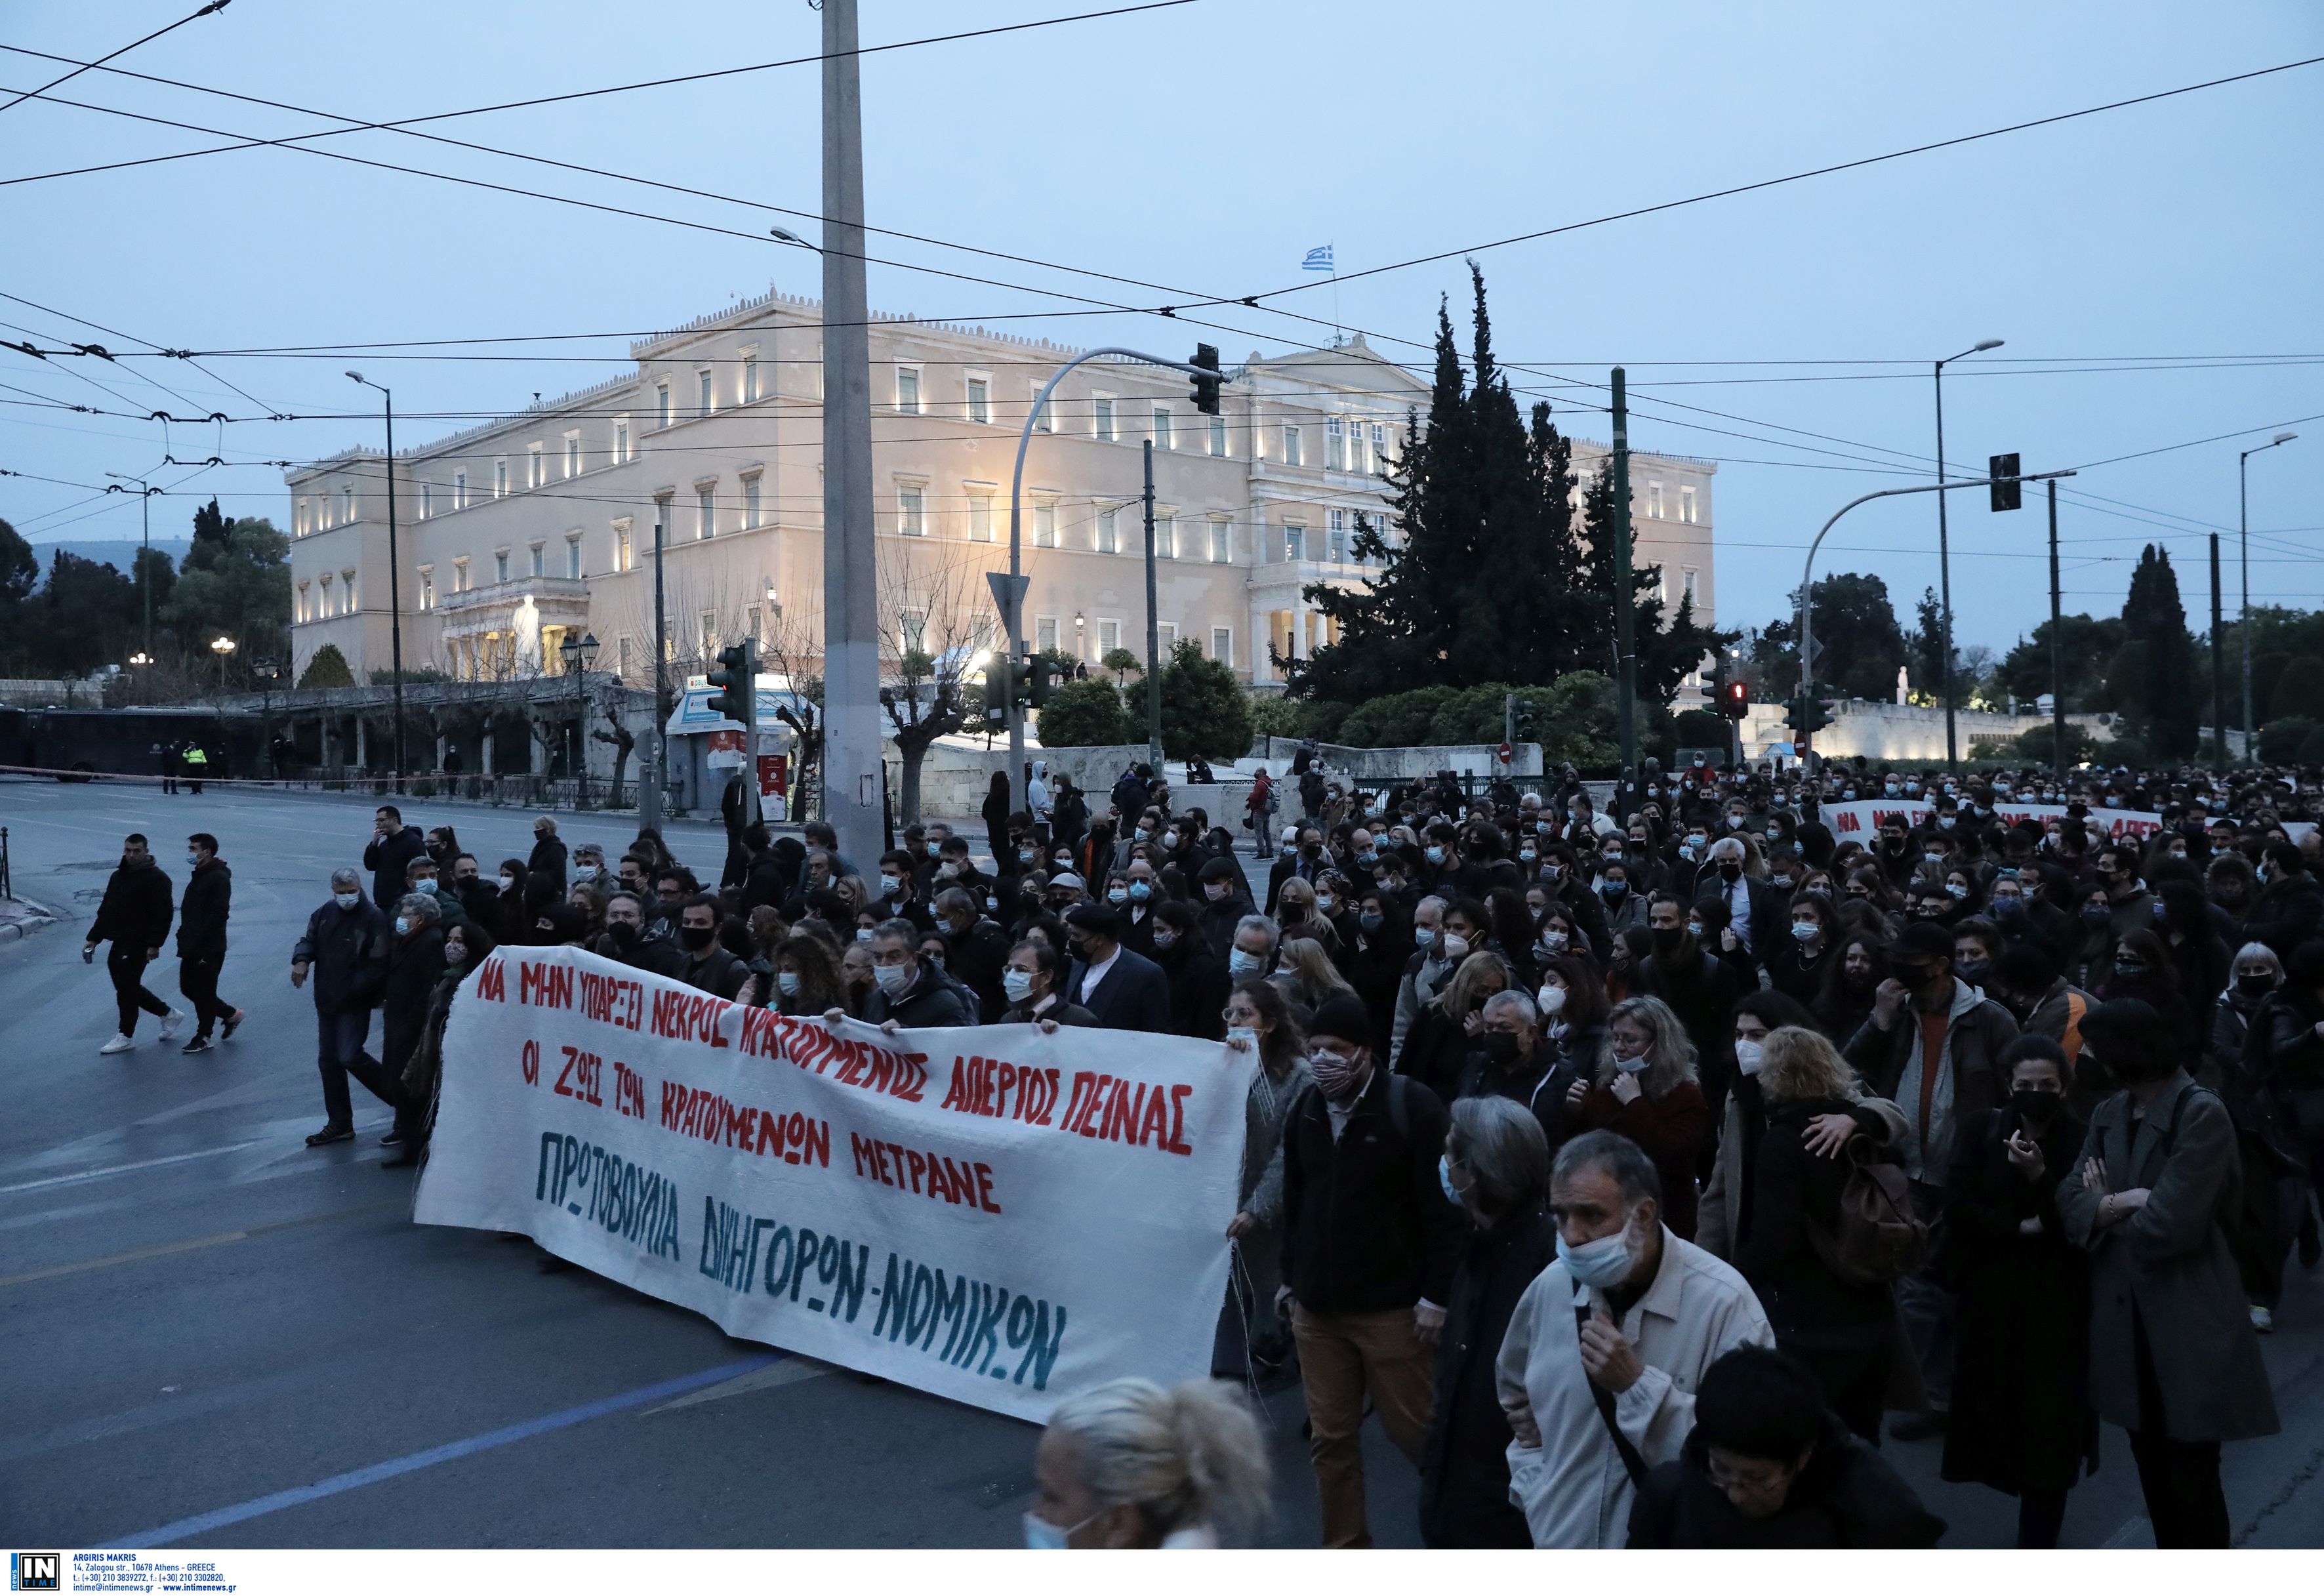 Πορεία στο κέντρο της Αθήνας